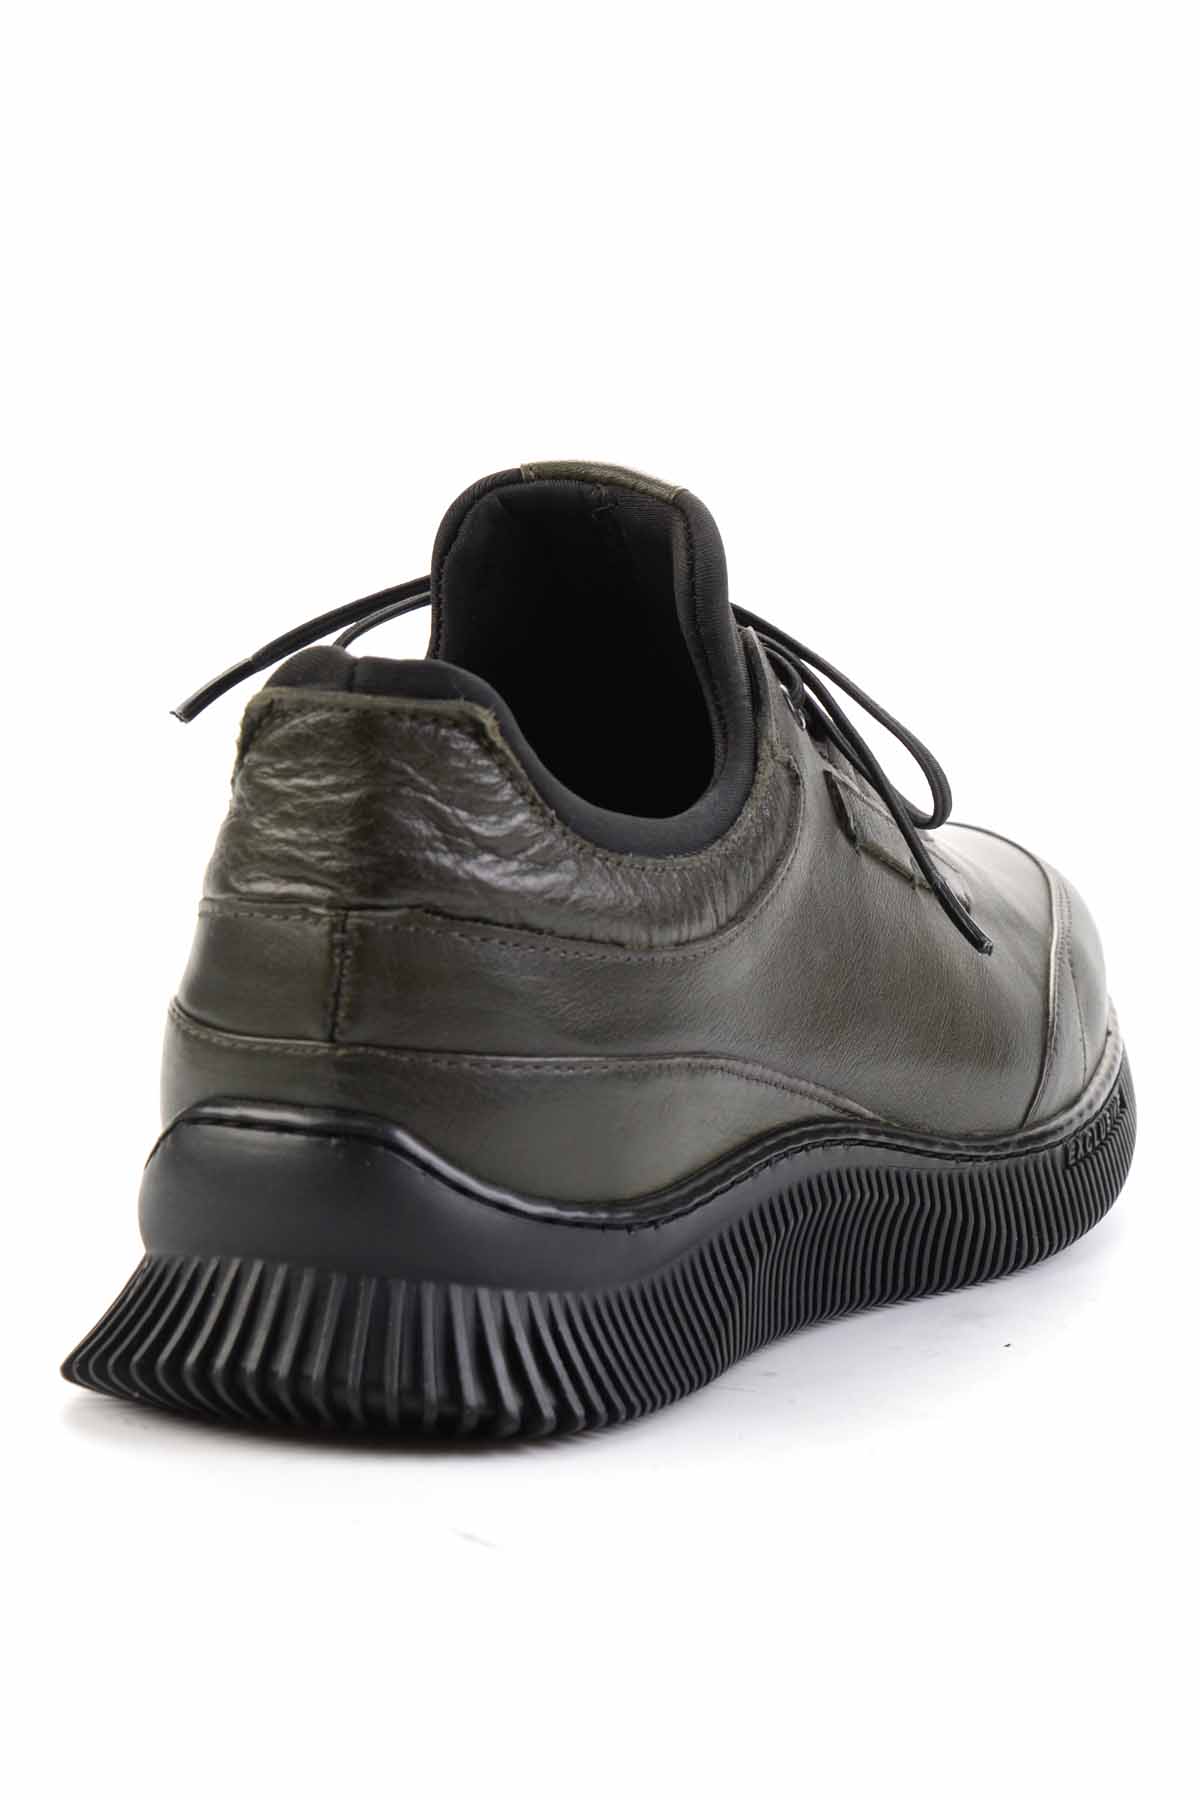 Haki/Siyah Streç Hakiki Deri Erkek Sneaker Ayakkabı